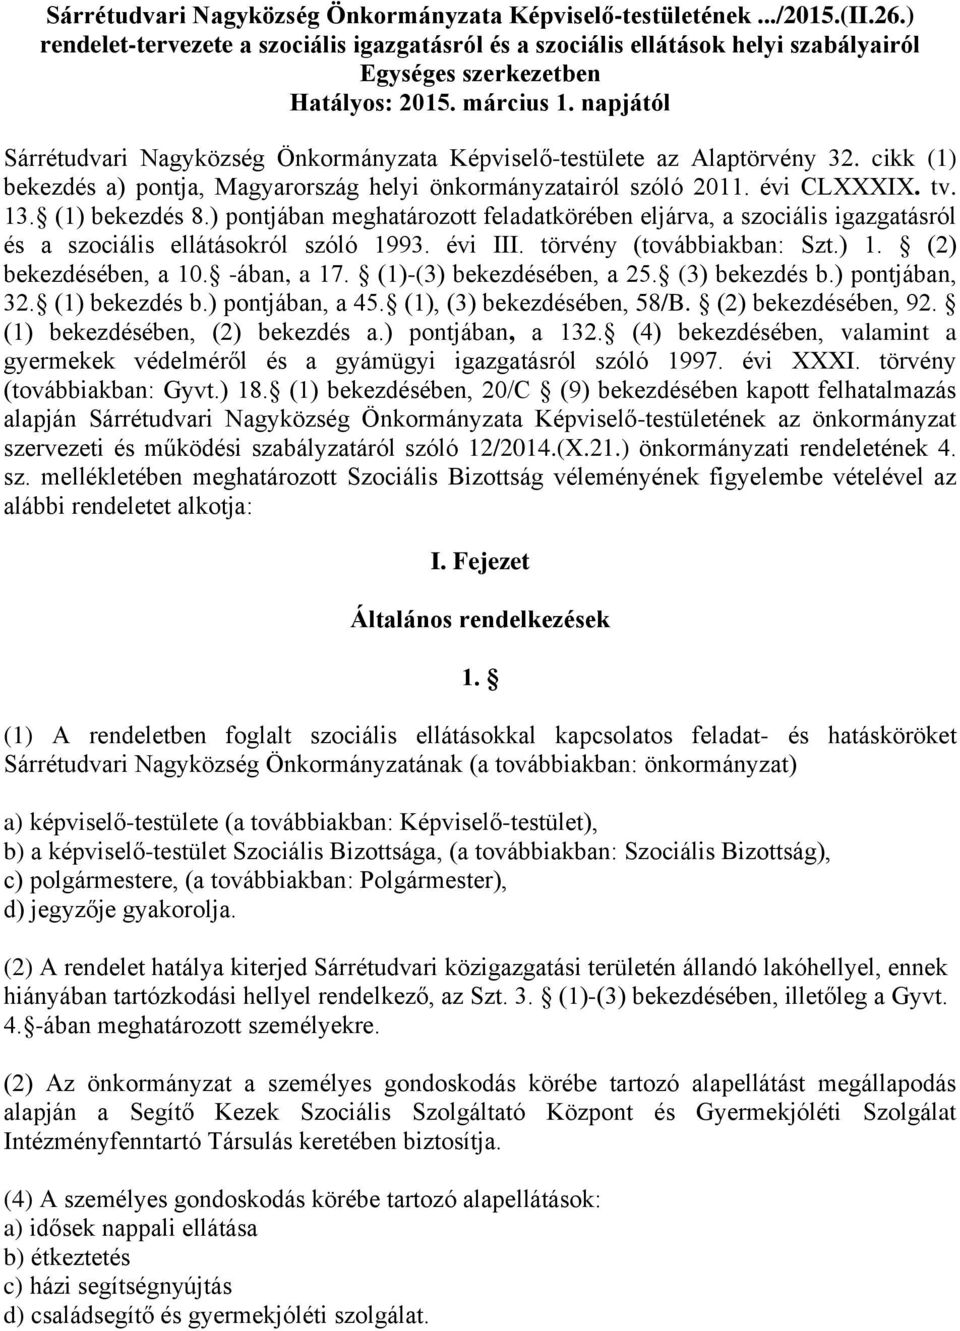 napjától Sárrétudvari Nagyközség Önkormányzata Képviselő-testülete az Alaptörvény 32. cikk (1) bekezdés a) pontja, Magyarország helyi önkormányzatairól szóló 2011. évi CLXXXIX. tv. 13. (1) bekezdés 8.